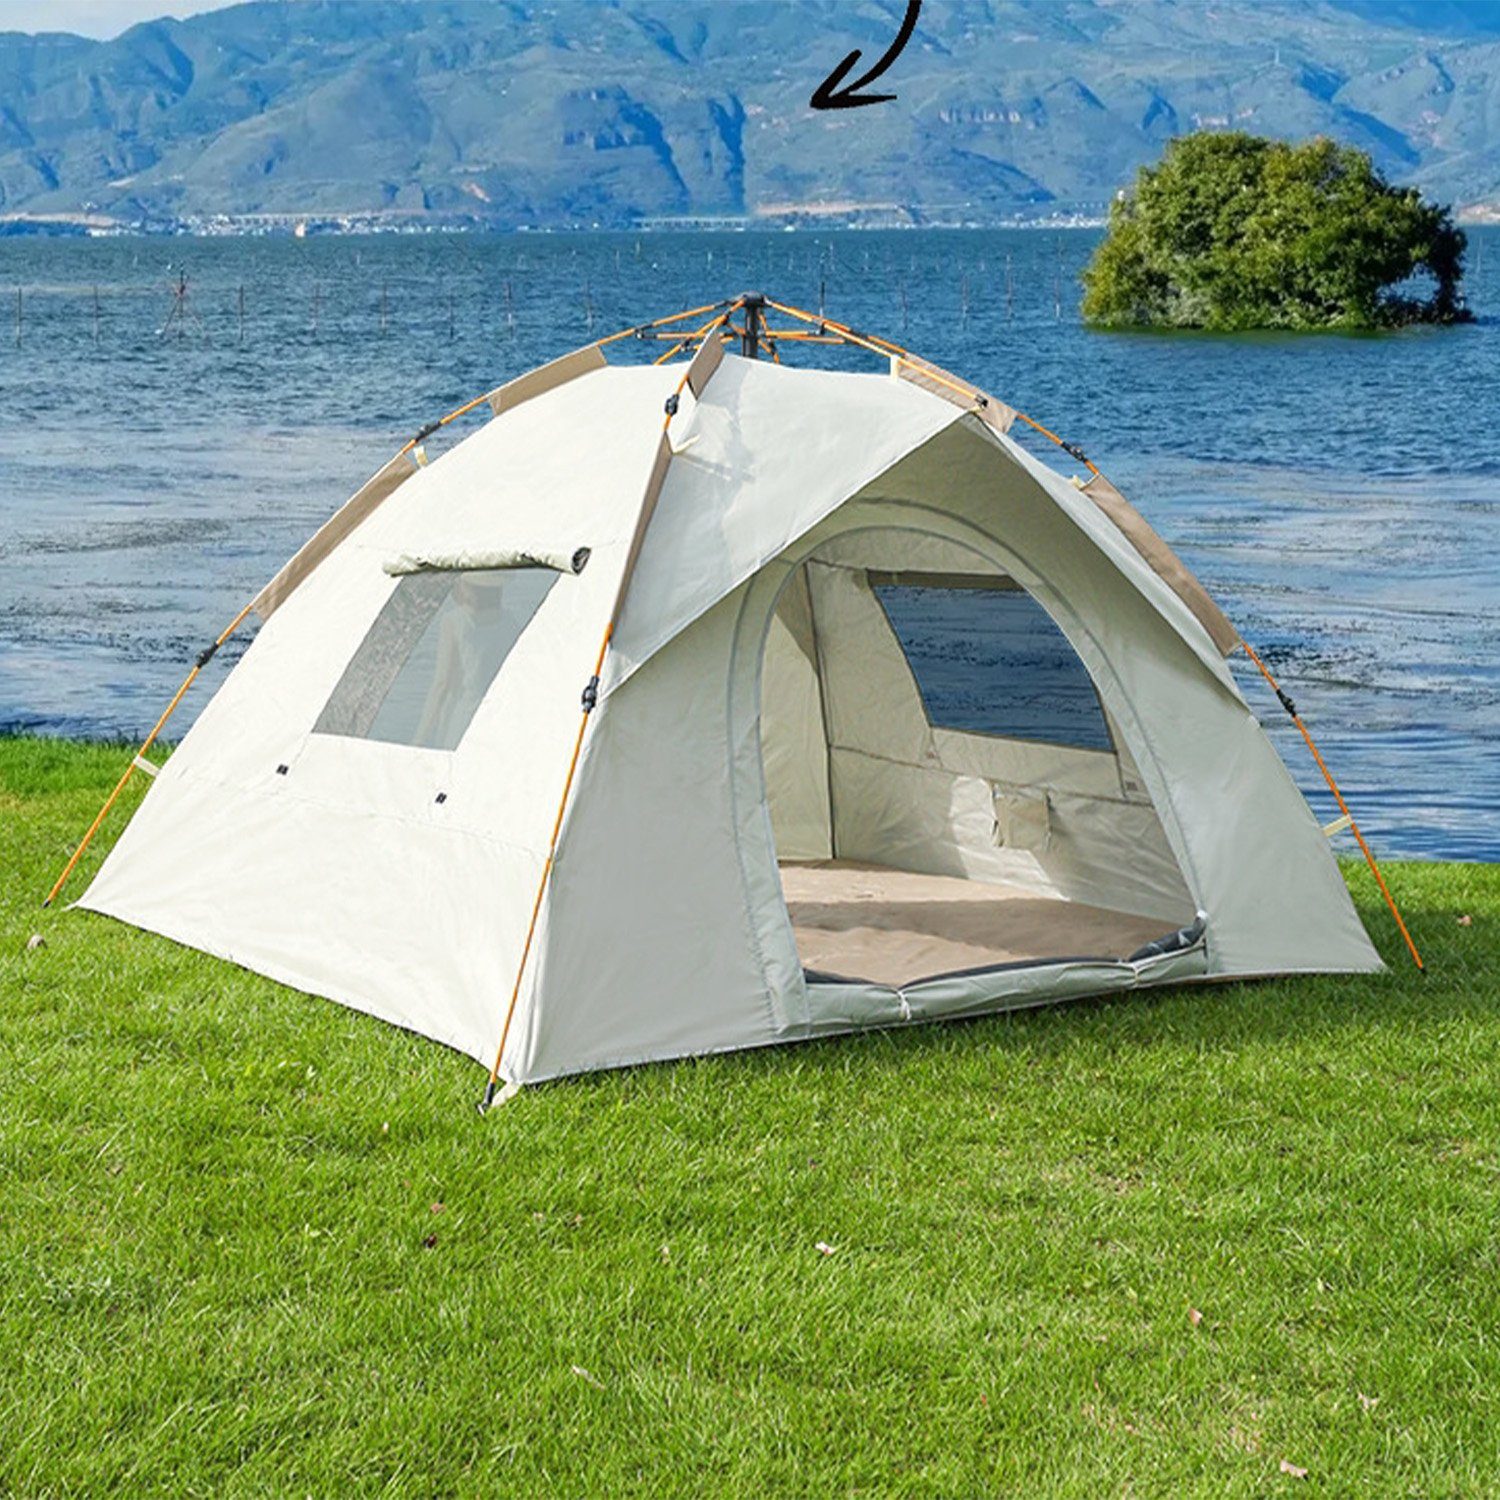 FIDDY Vorzelt Zelt für den Außenbereich, tragbar, faltbar, vollautomatisch, Personen: 2 (Camping Beach Quick Open Camping Silberkleberbeschichtung, Verdicktes regensicheres Doppel 200 * 150 * 135 cm)